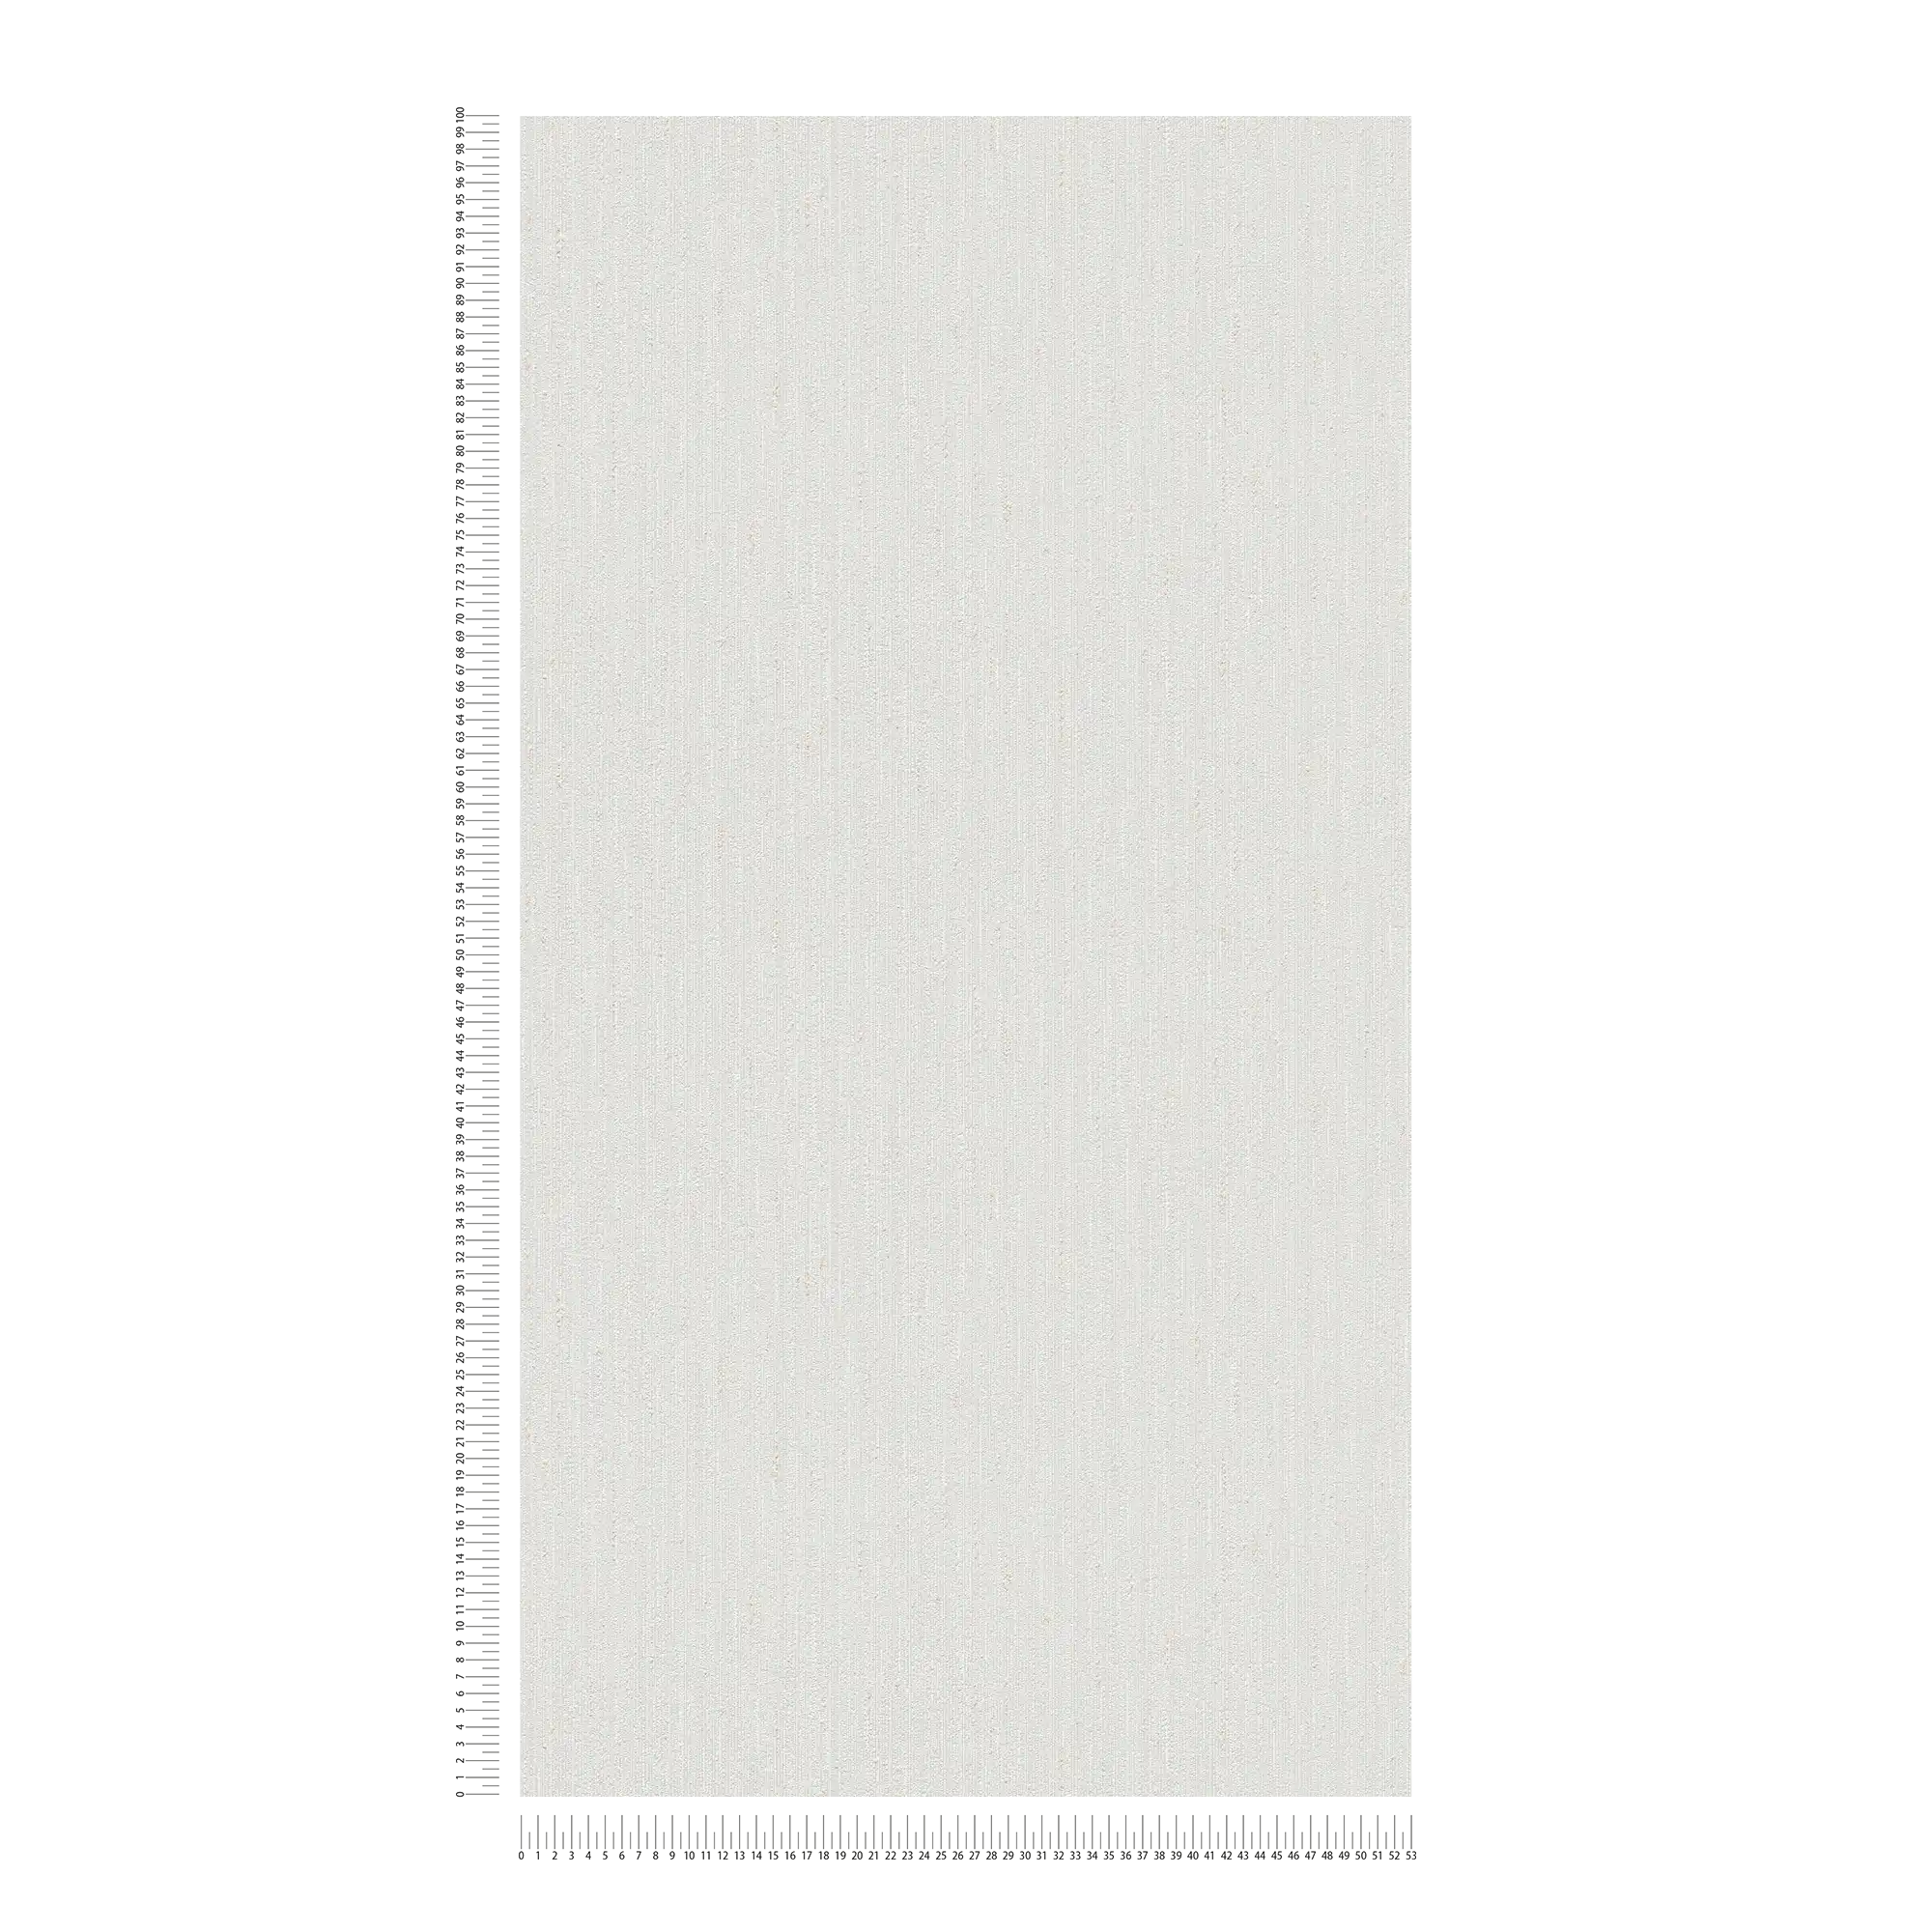             papier peint en papier uni à texture légère - gris, taupe
        